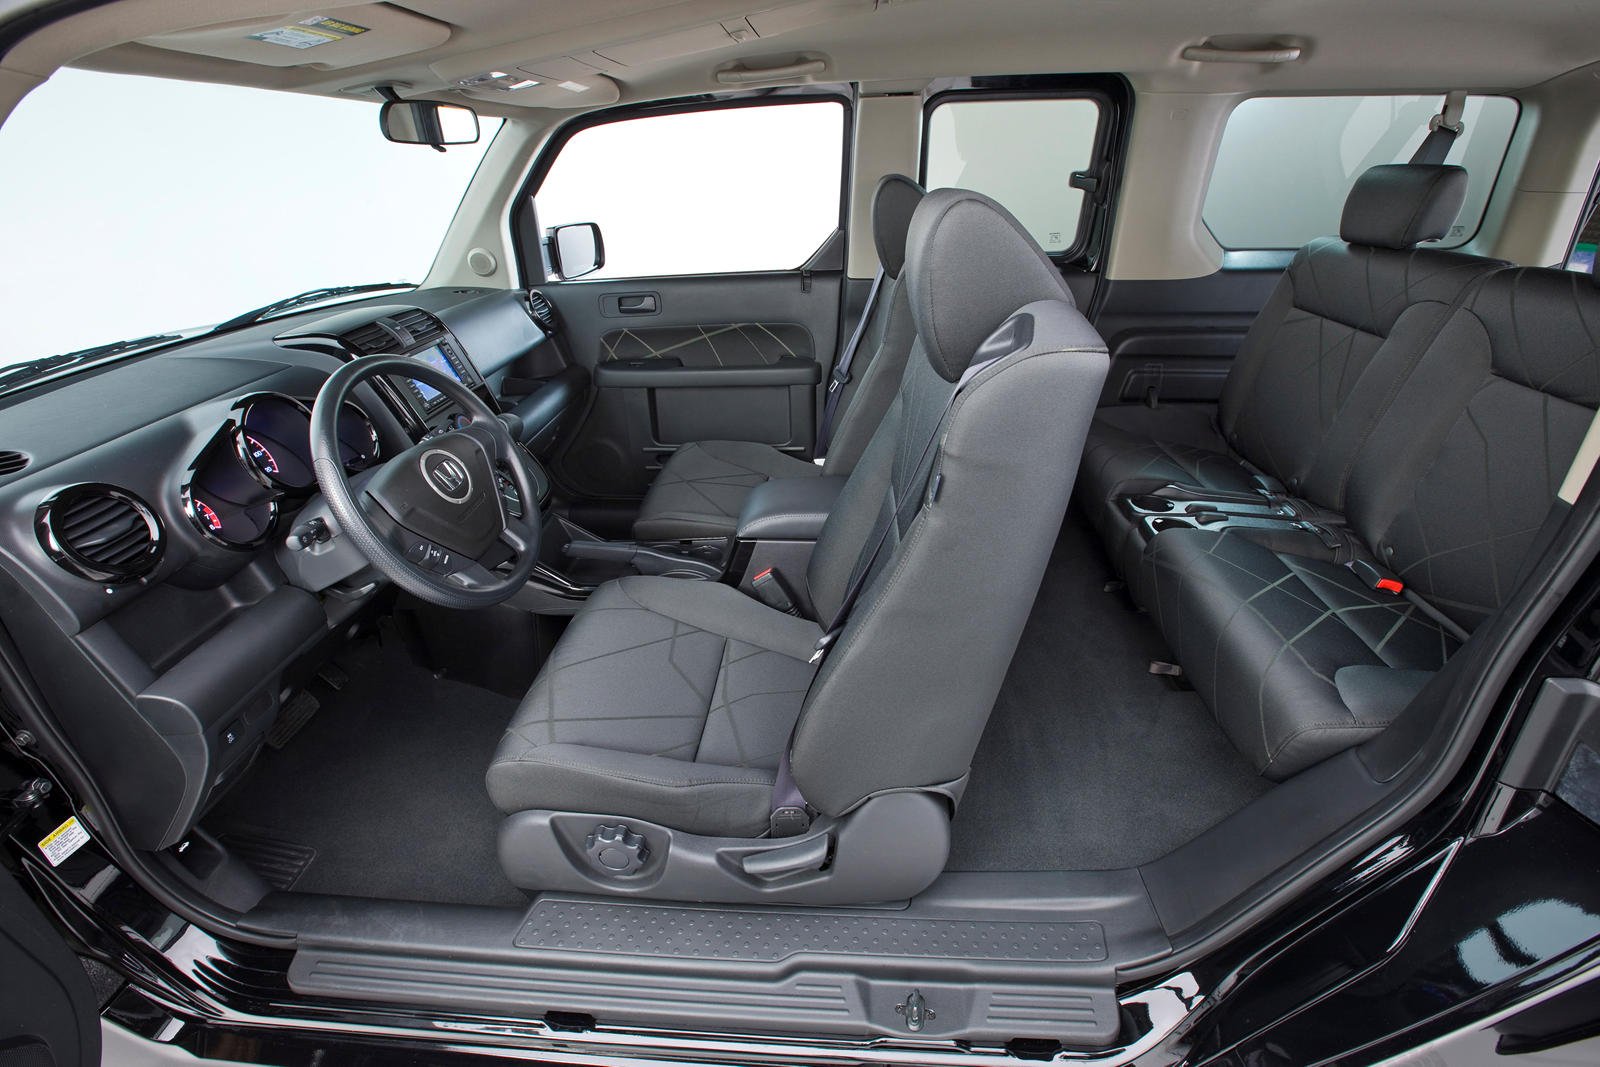 Honda Element interior - Seats